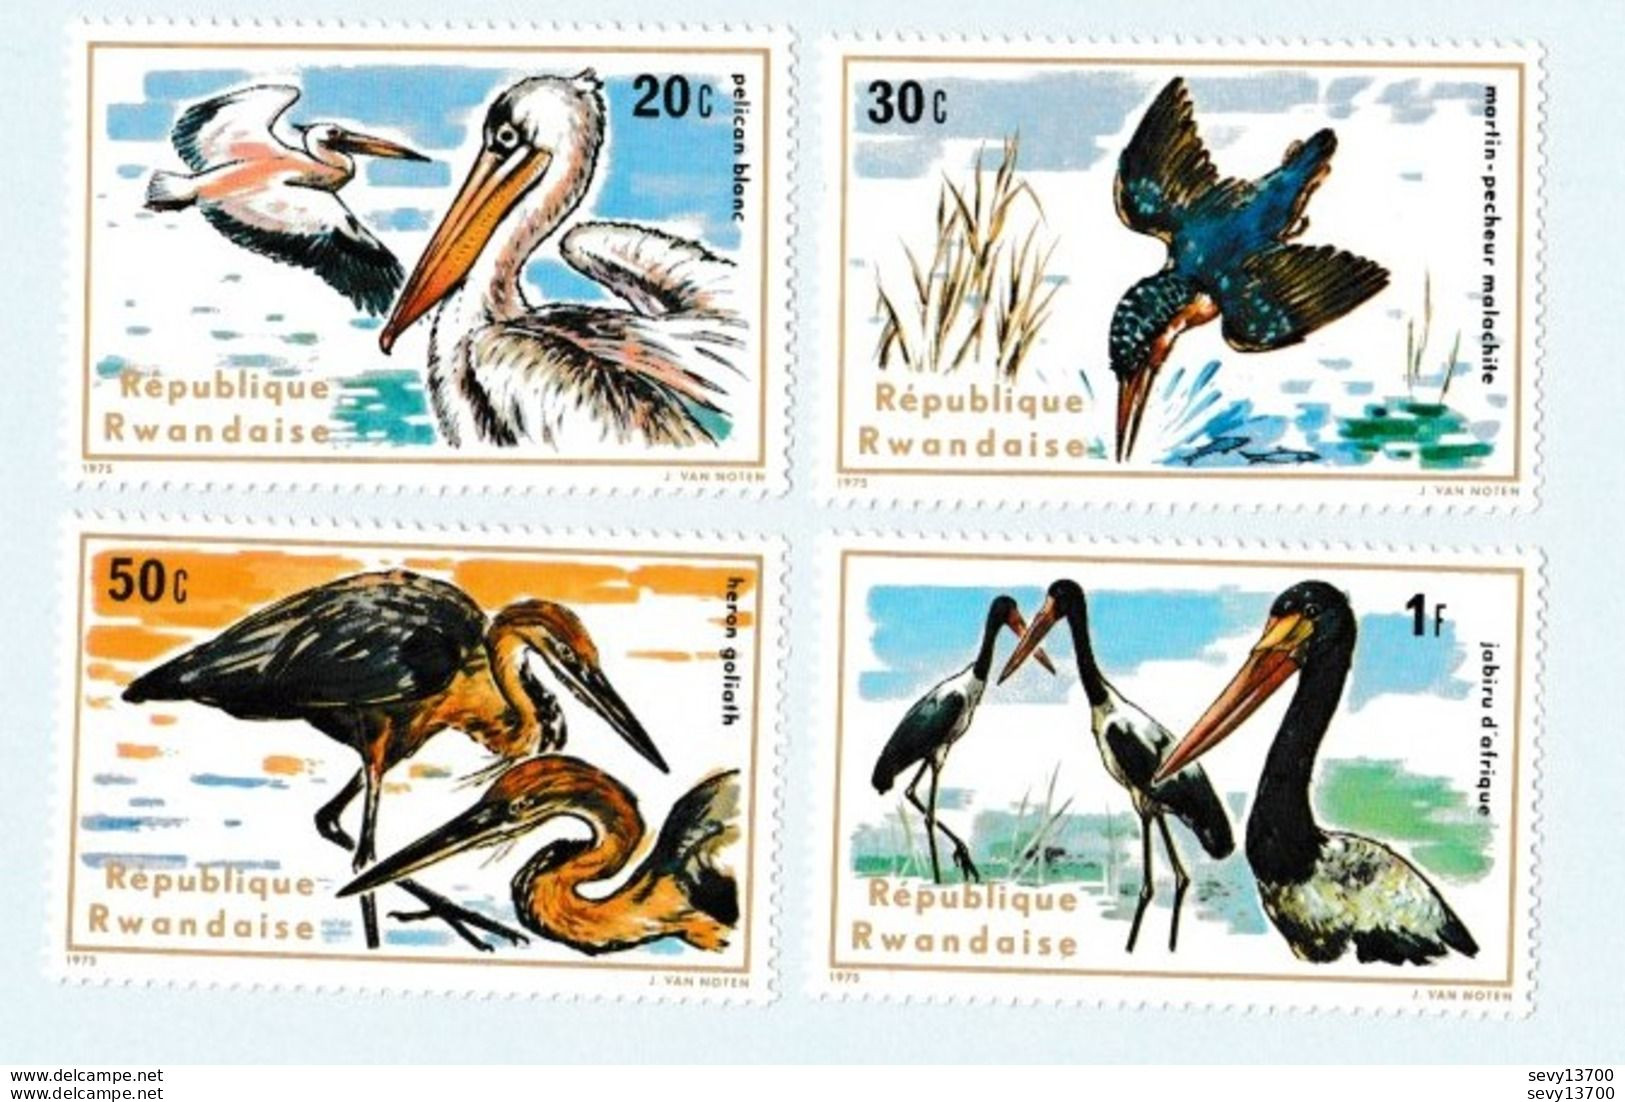 République Rwandaise lot de 36 timbres neufs faune et flore